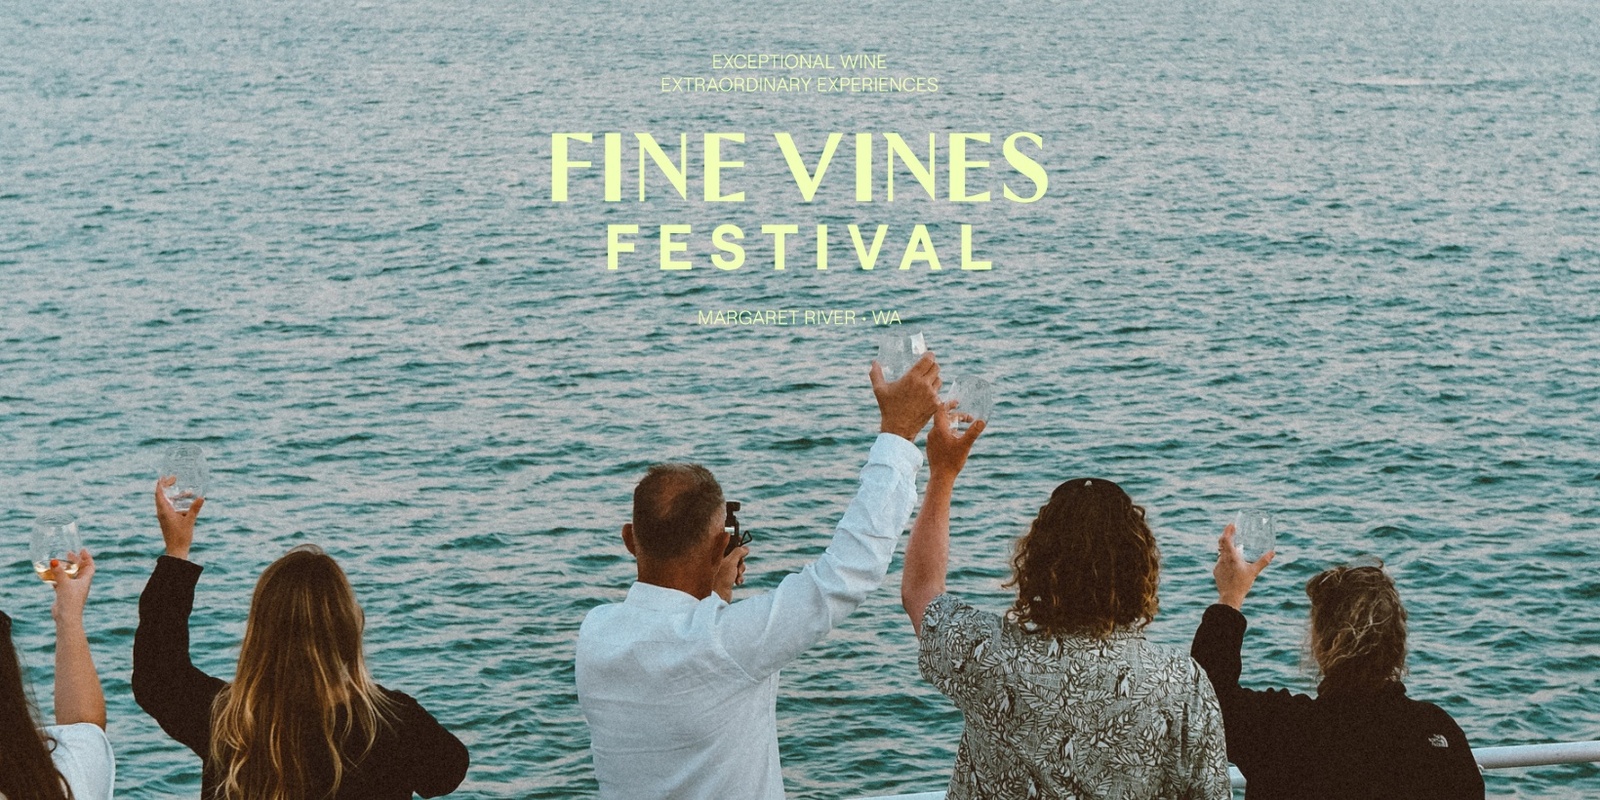 Margaret River Fine Vines Festival's banner